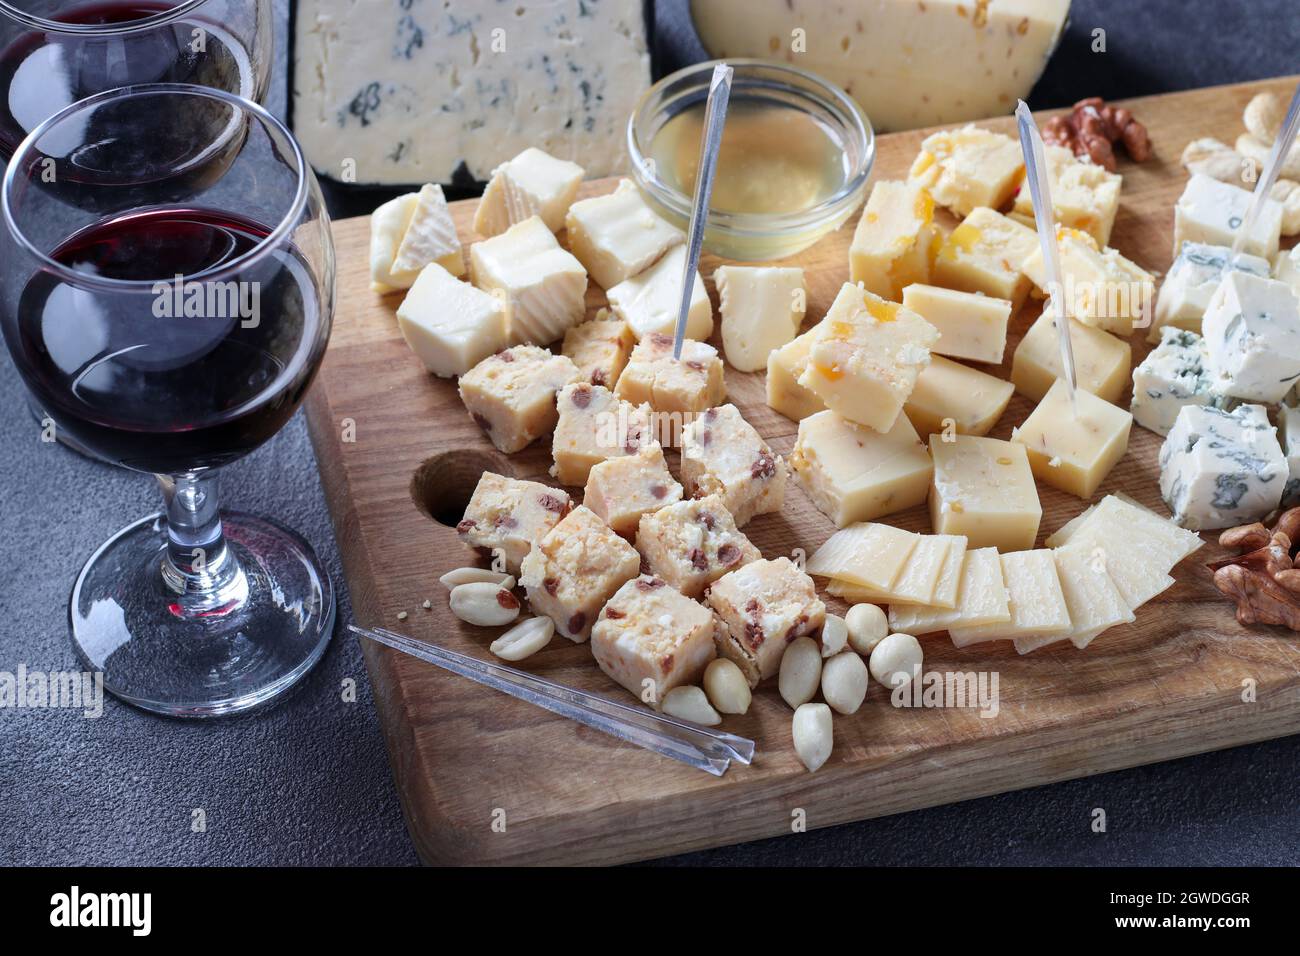 Spitzenkäse: Mit Trüffel, Dor blau, Brie, Parmesan und einer Auswahl von Nüssen auf einem Holzbrett auf dunkelgrauem Hintergrund. Weinparty-Snack. Stockfoto